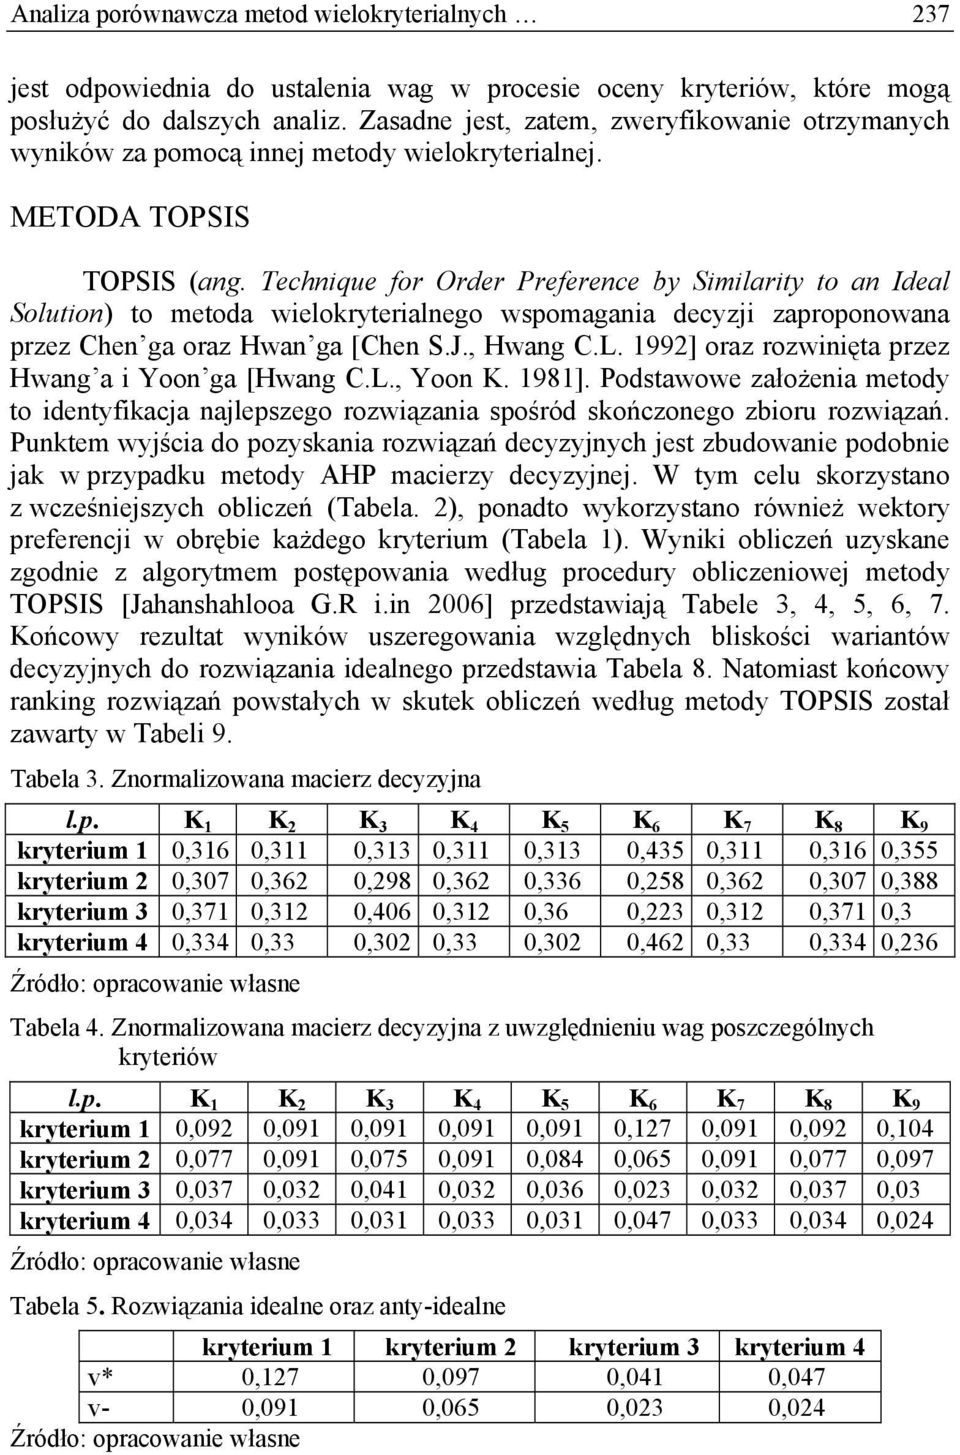 Technique for Order Preference by Similarity to an Ideal Solution) to metoda wielokryterialnego wspomagania decyzji zaproponowana przez Chen ga oraz Hwan ga [Chen S.J., Hwang C.L.